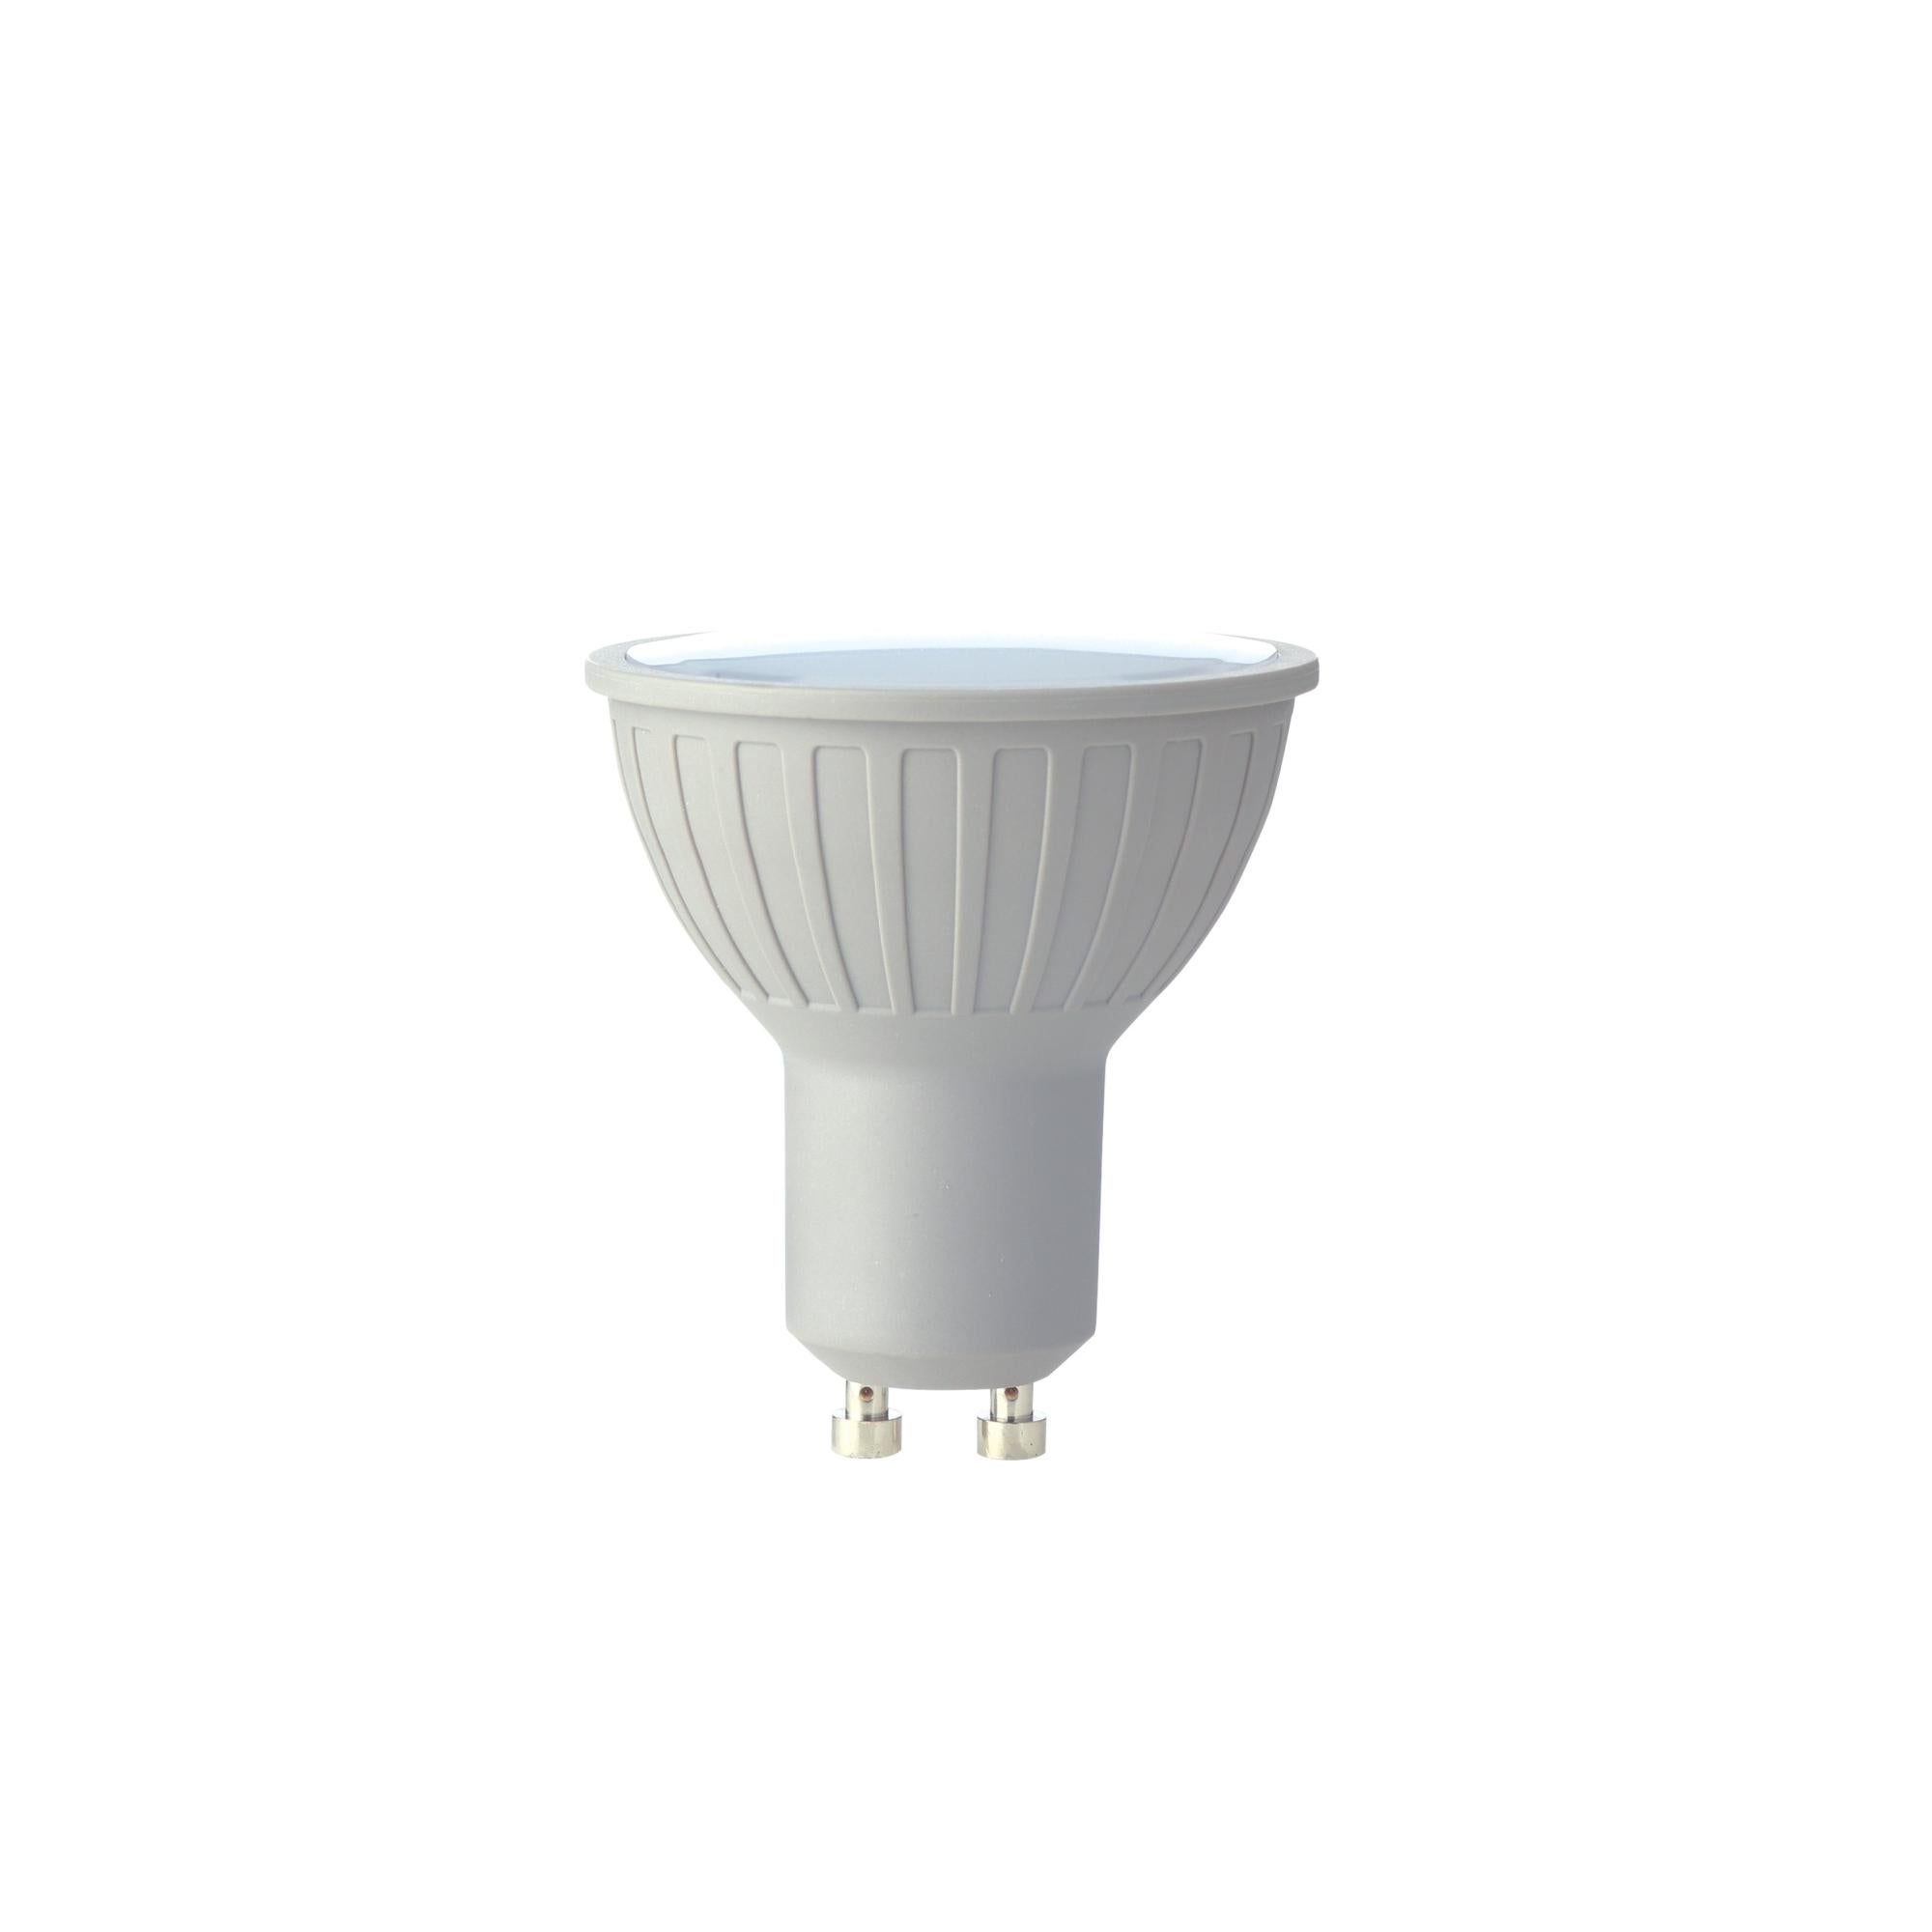 ACHETER Ampoule LED GU10 6W - SAMSUNG GLASS Opciones GU10 Température Blanc  chaud - 3000K